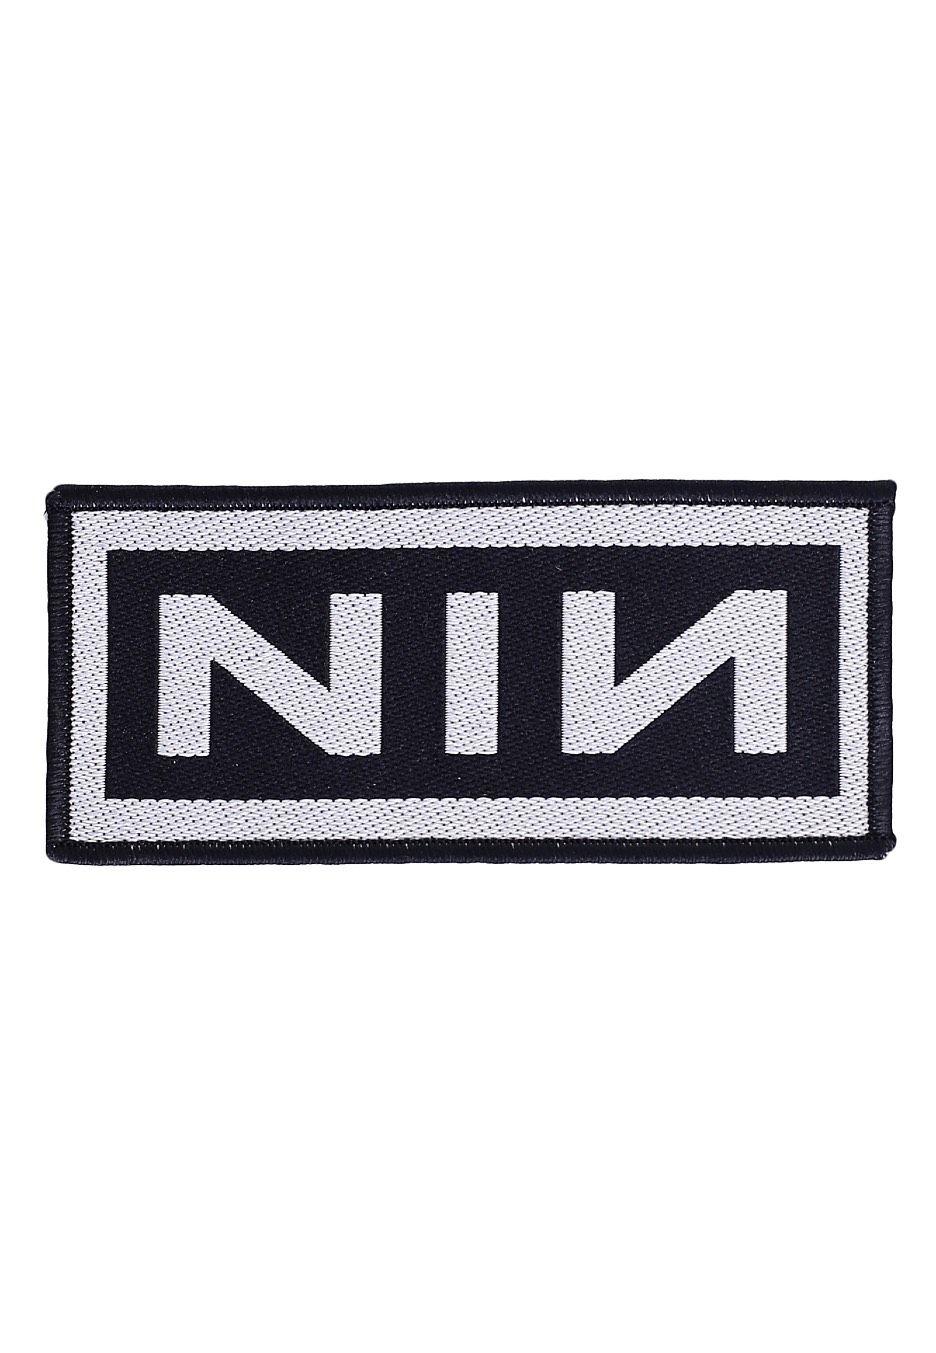 Nine Inch Nails Logo - Nine Inch Nails - Logo - Patch - Official Pop Merchandise Shop ...